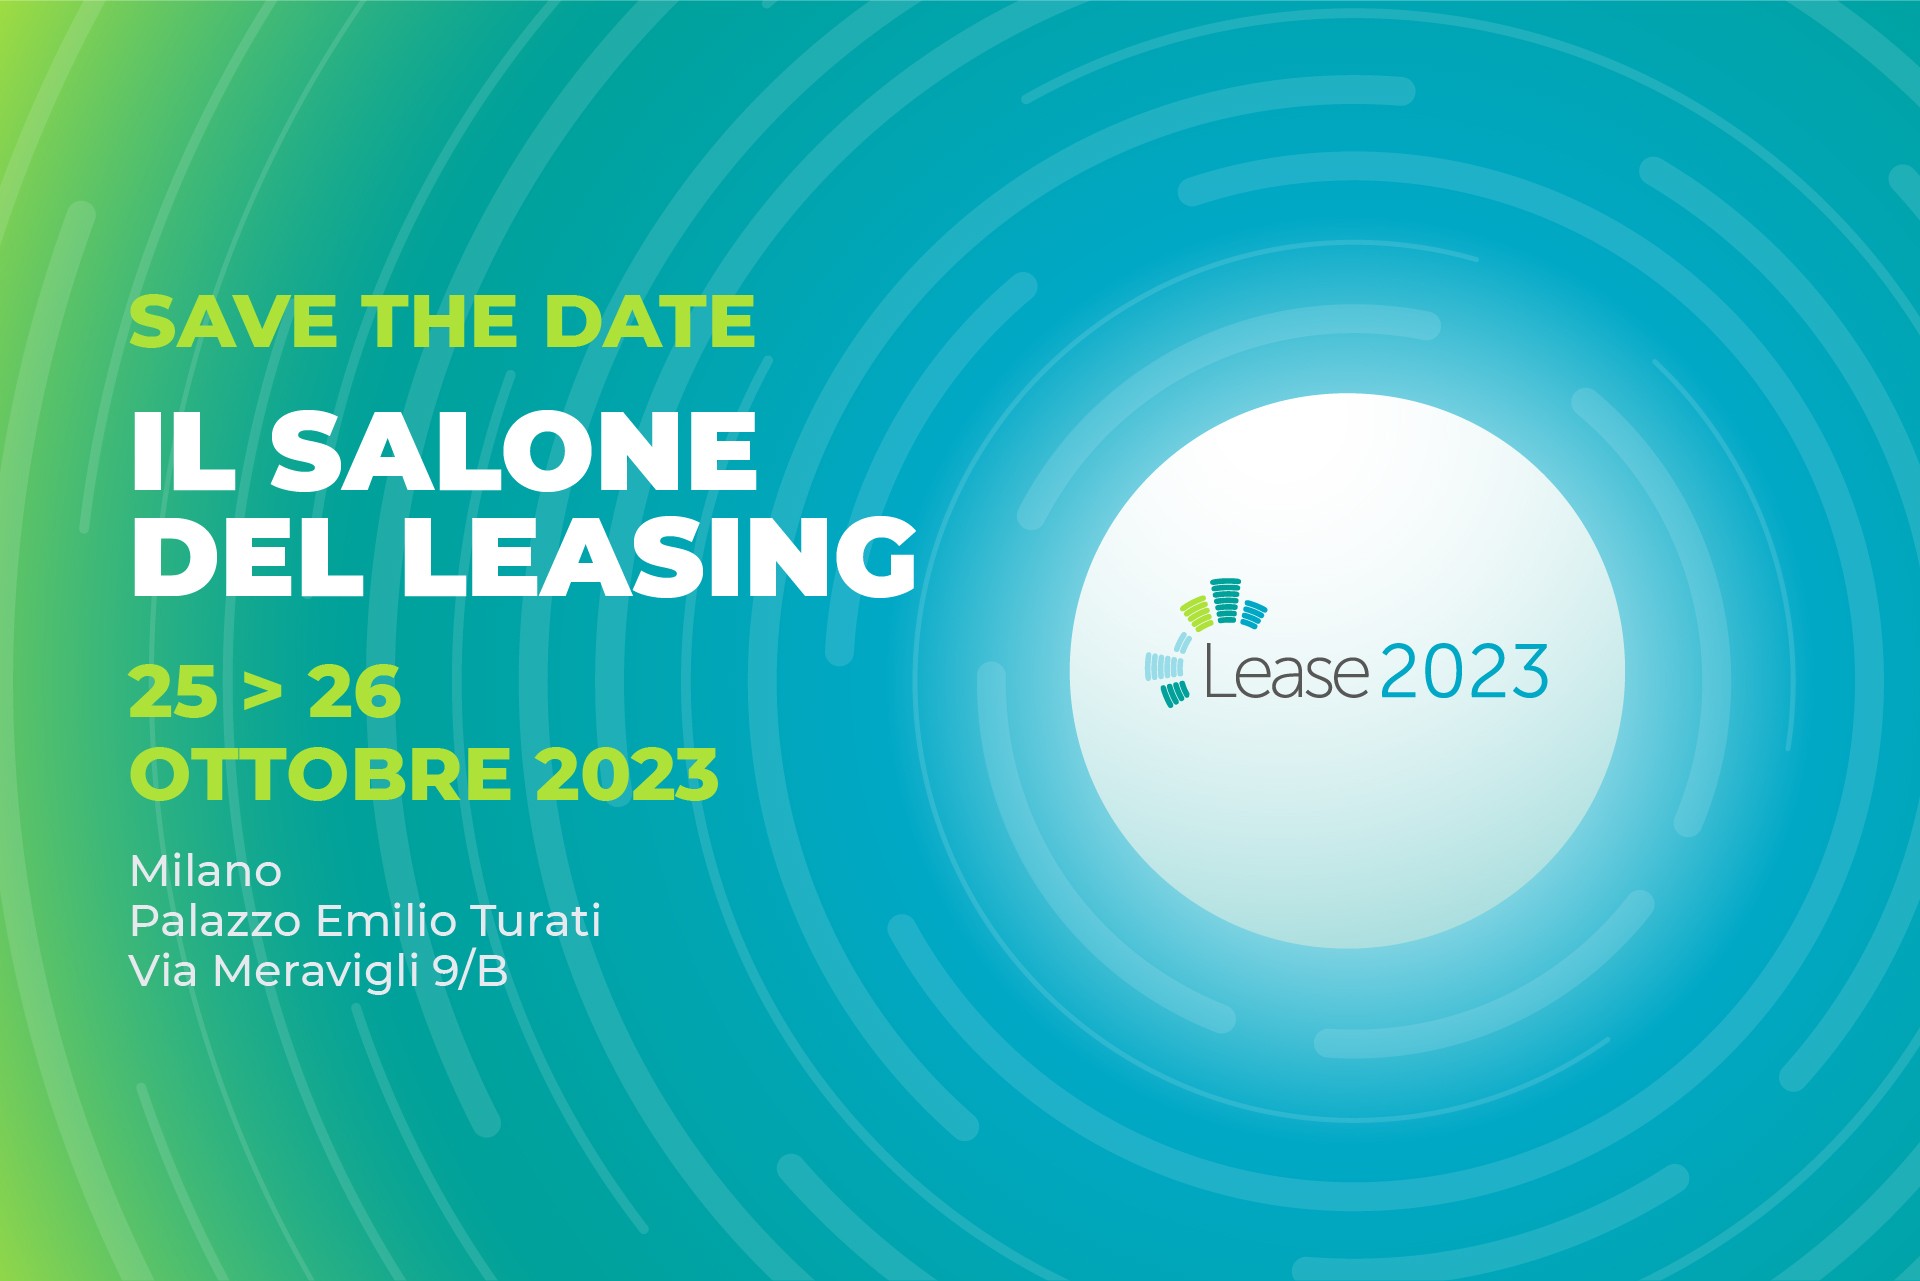 Lease 2023, il Salone del leasing a Milano il 25-26 ottobre